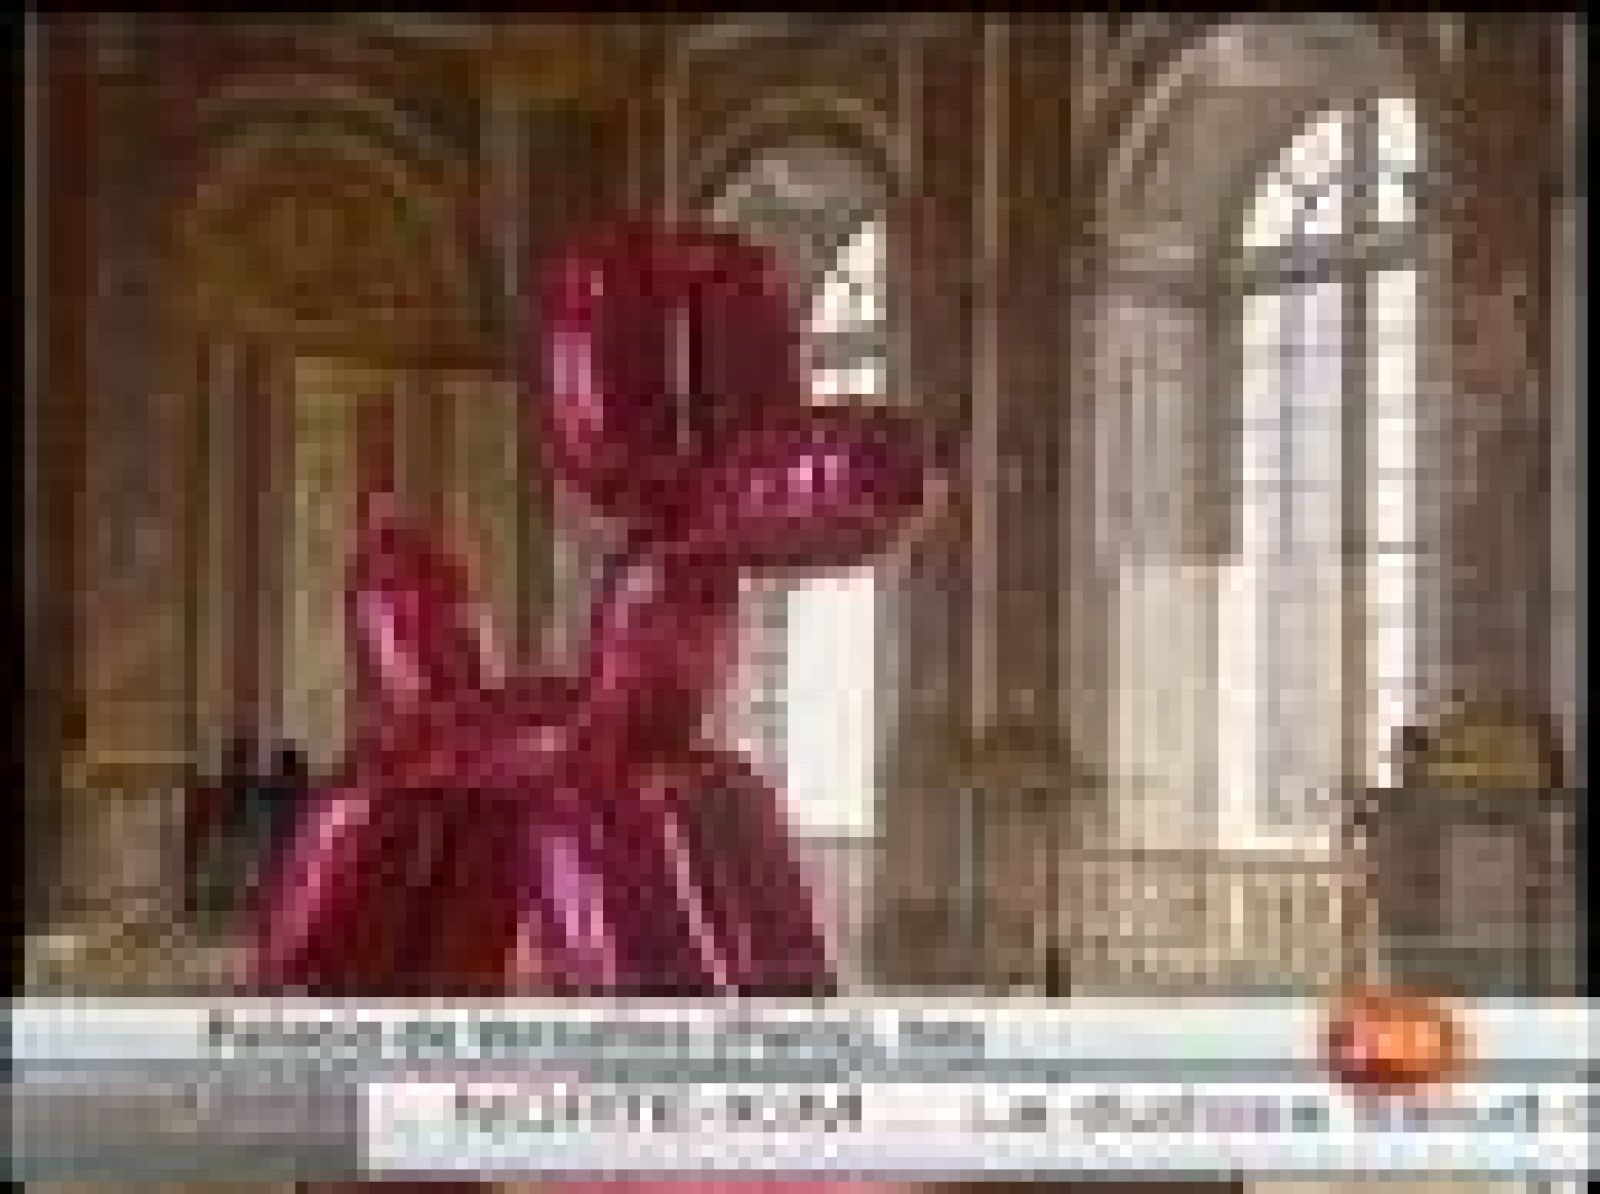 El artista estadounidense Jeff Koons expone sus atrevidas obras en las salas doradas del Palacio de Versalles.  